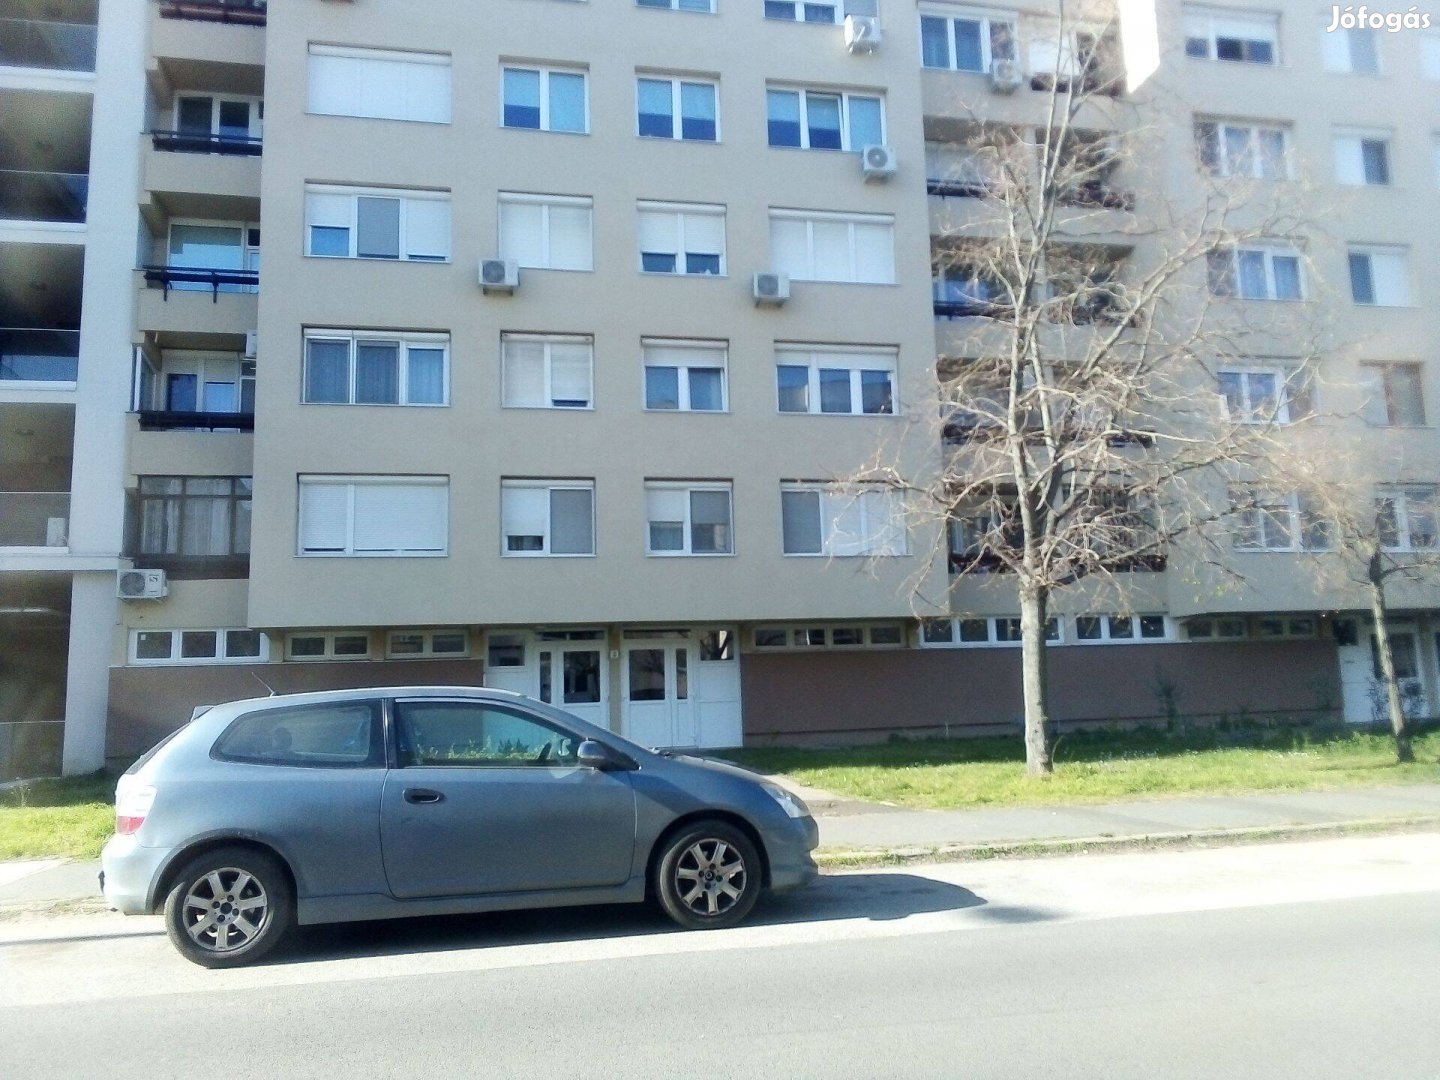 Martonfalvi utca Aranykakas társasház mellett földszint 45 m2-es lakás